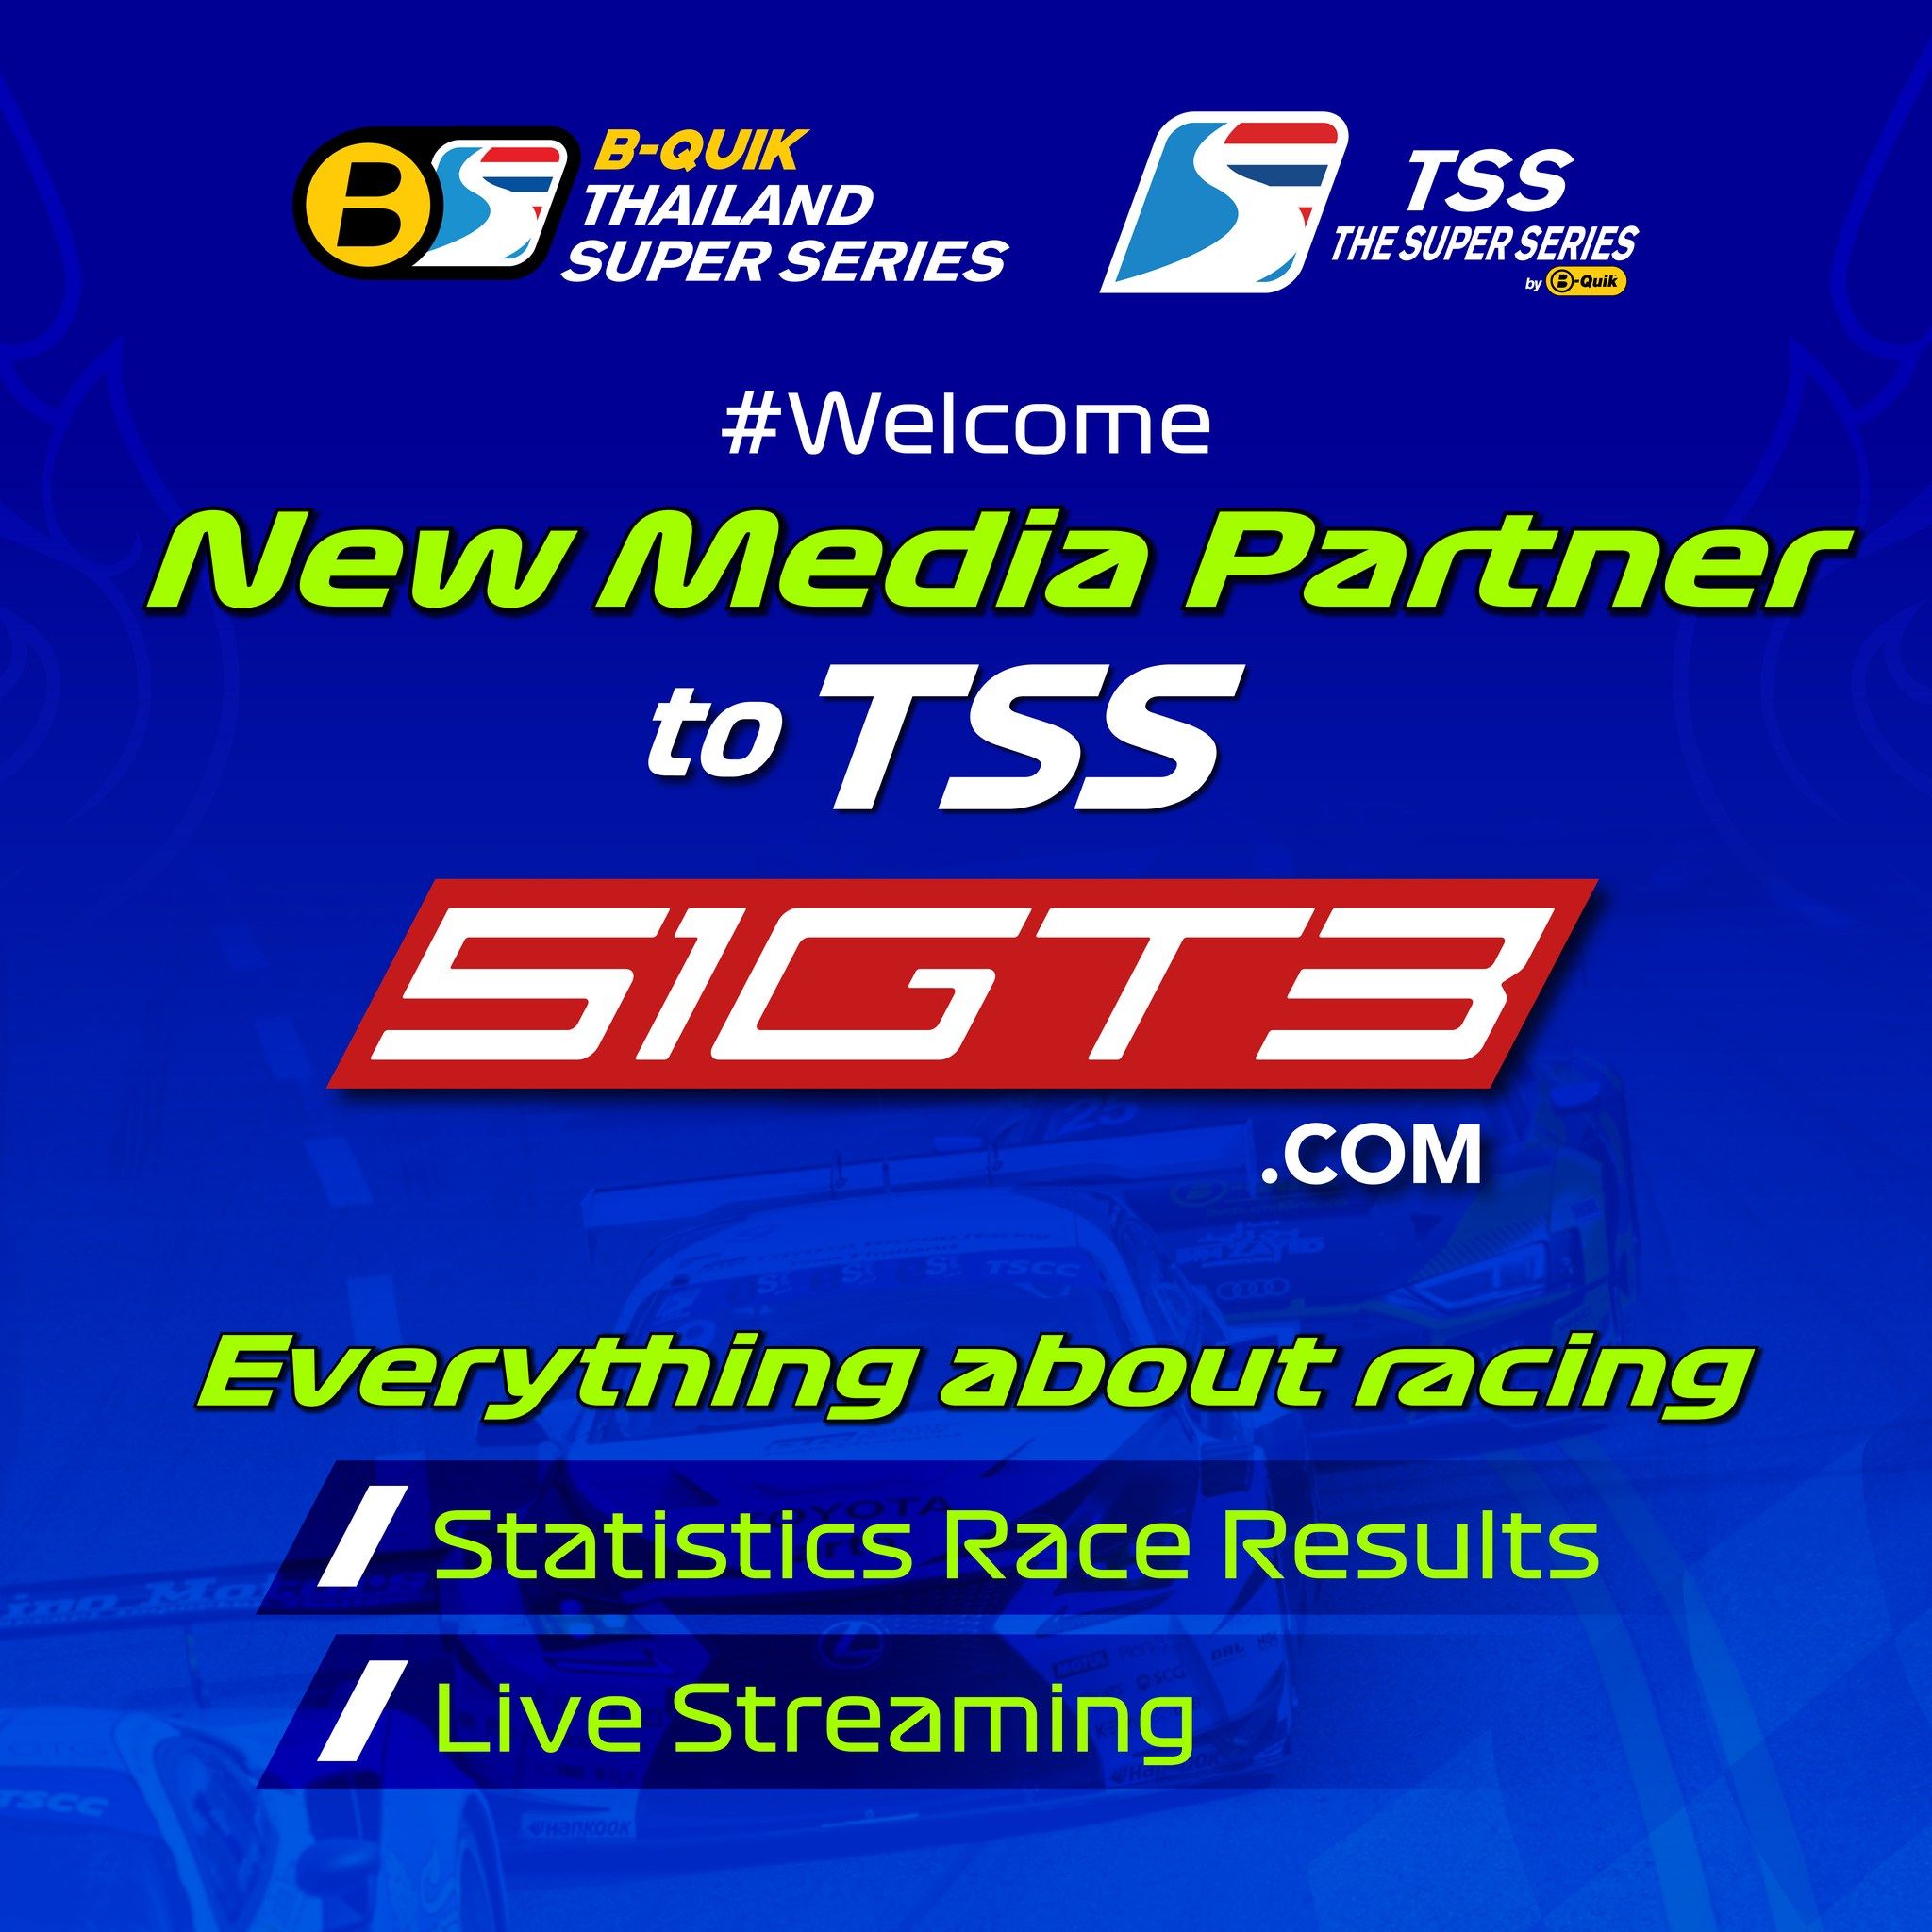 Bienvenido nuevo socio de medios a TSS - 51GT3.com